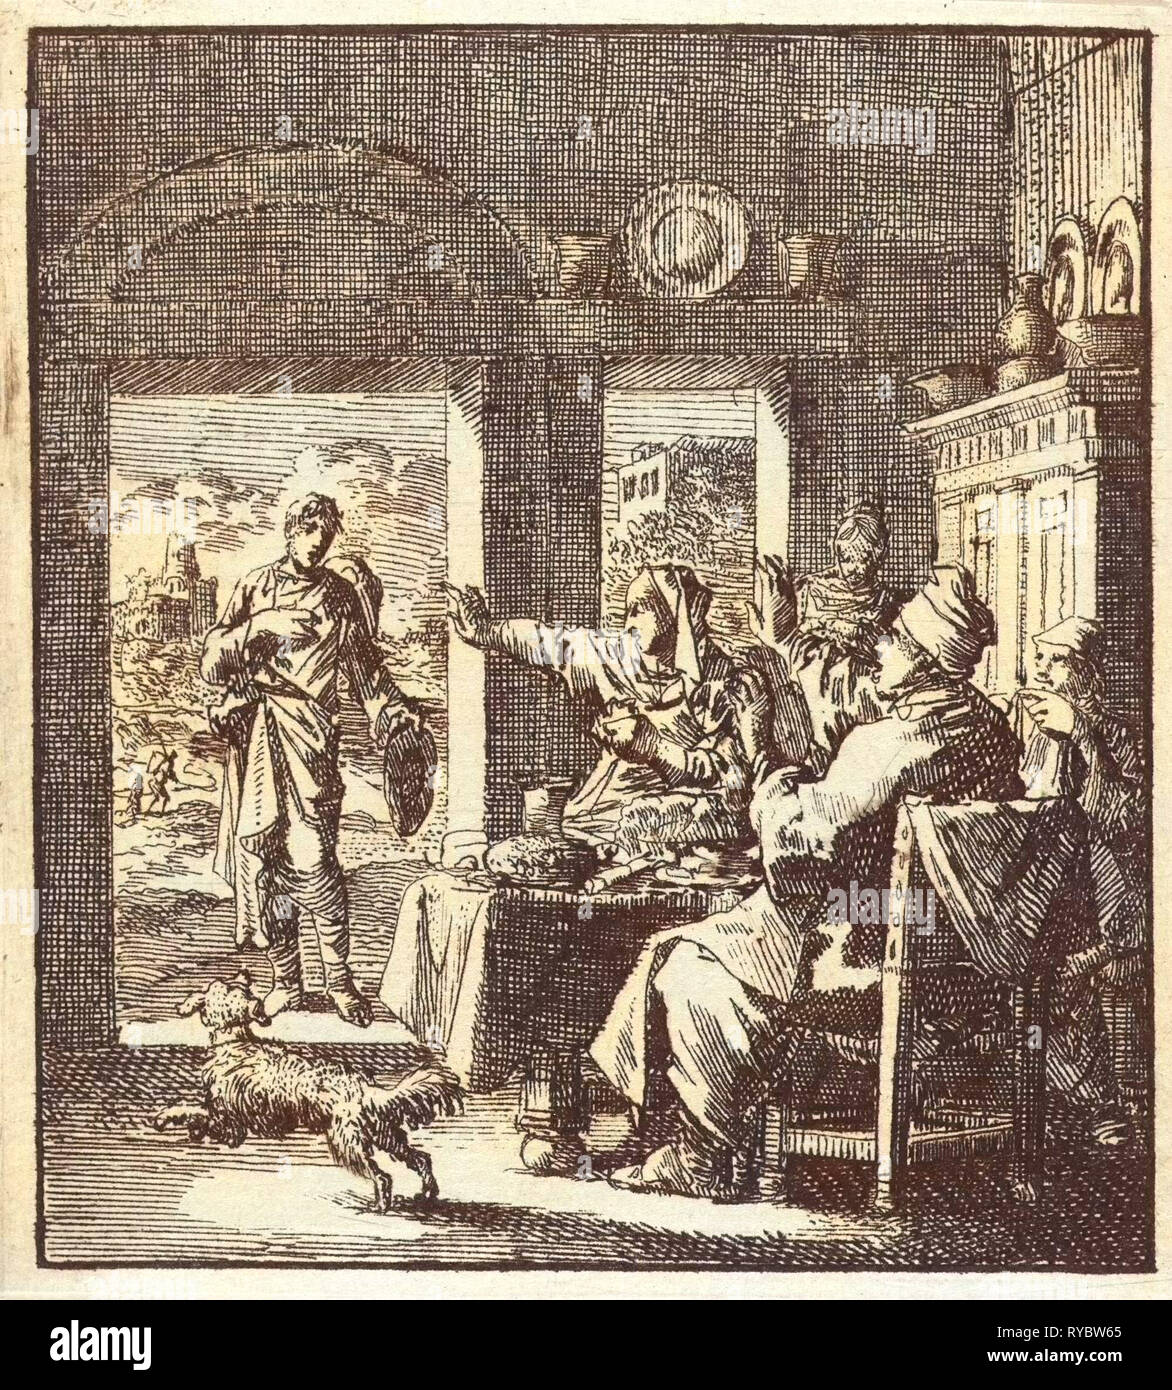 Family makes dismissive gestures to a poor man who asks for help, Jan Luyken, wed. Pieter Arentsz, Cornelis van der Sys II, 1711 Stock Photo